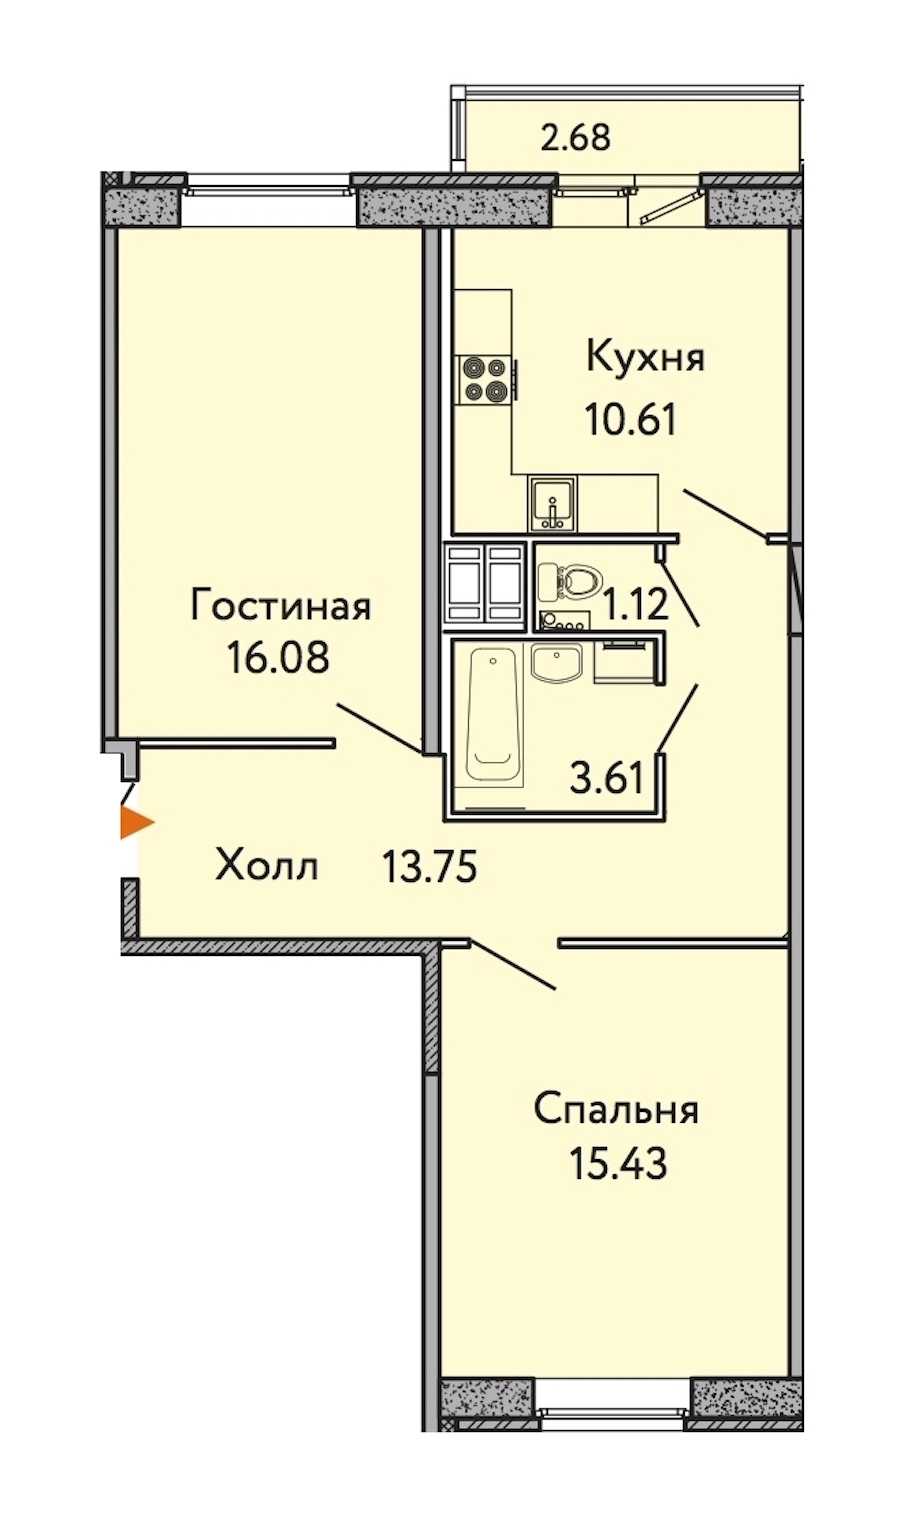 Двухкомнатная квартира в : площадь 61.4 м2 , этаж: 10 – купить в Санкт-Петербурге